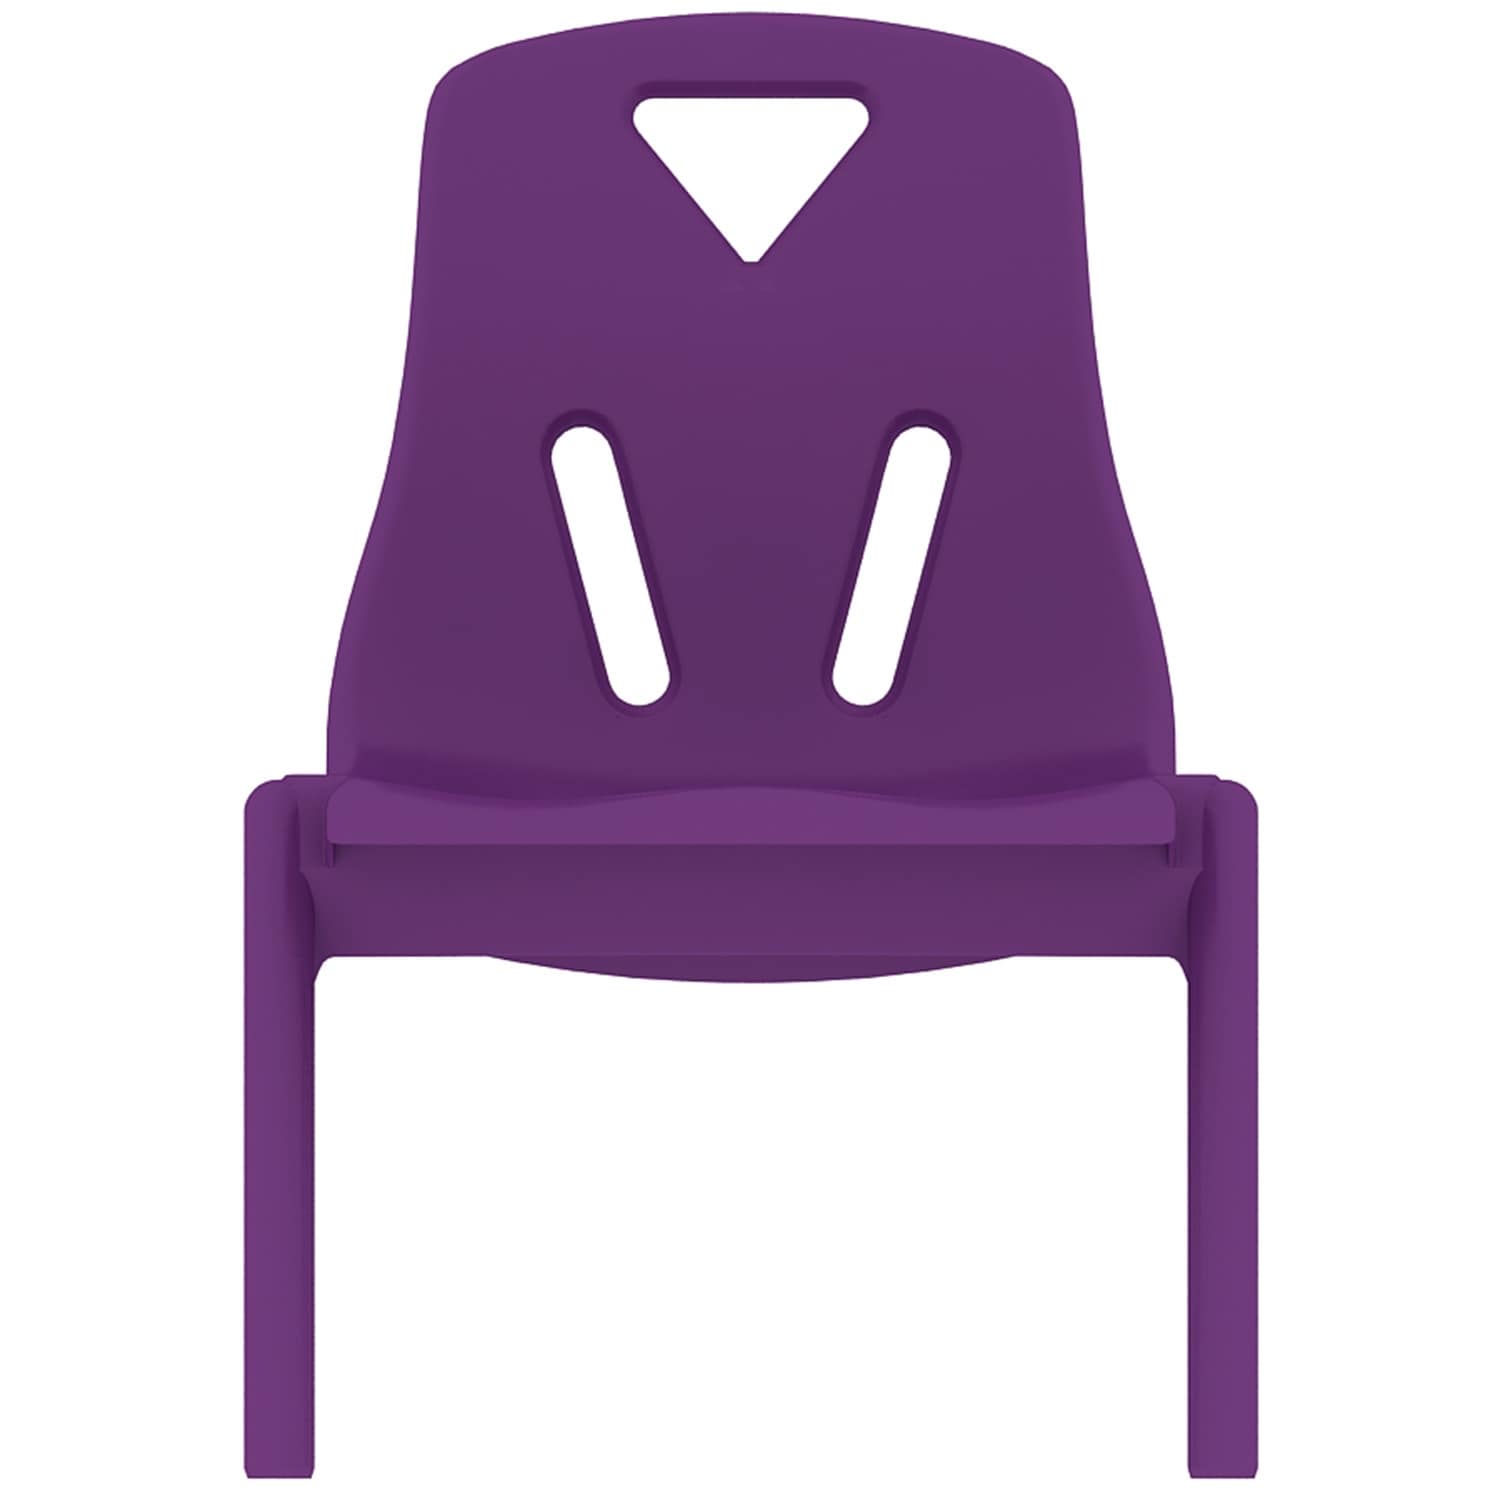 purple kids desk chair